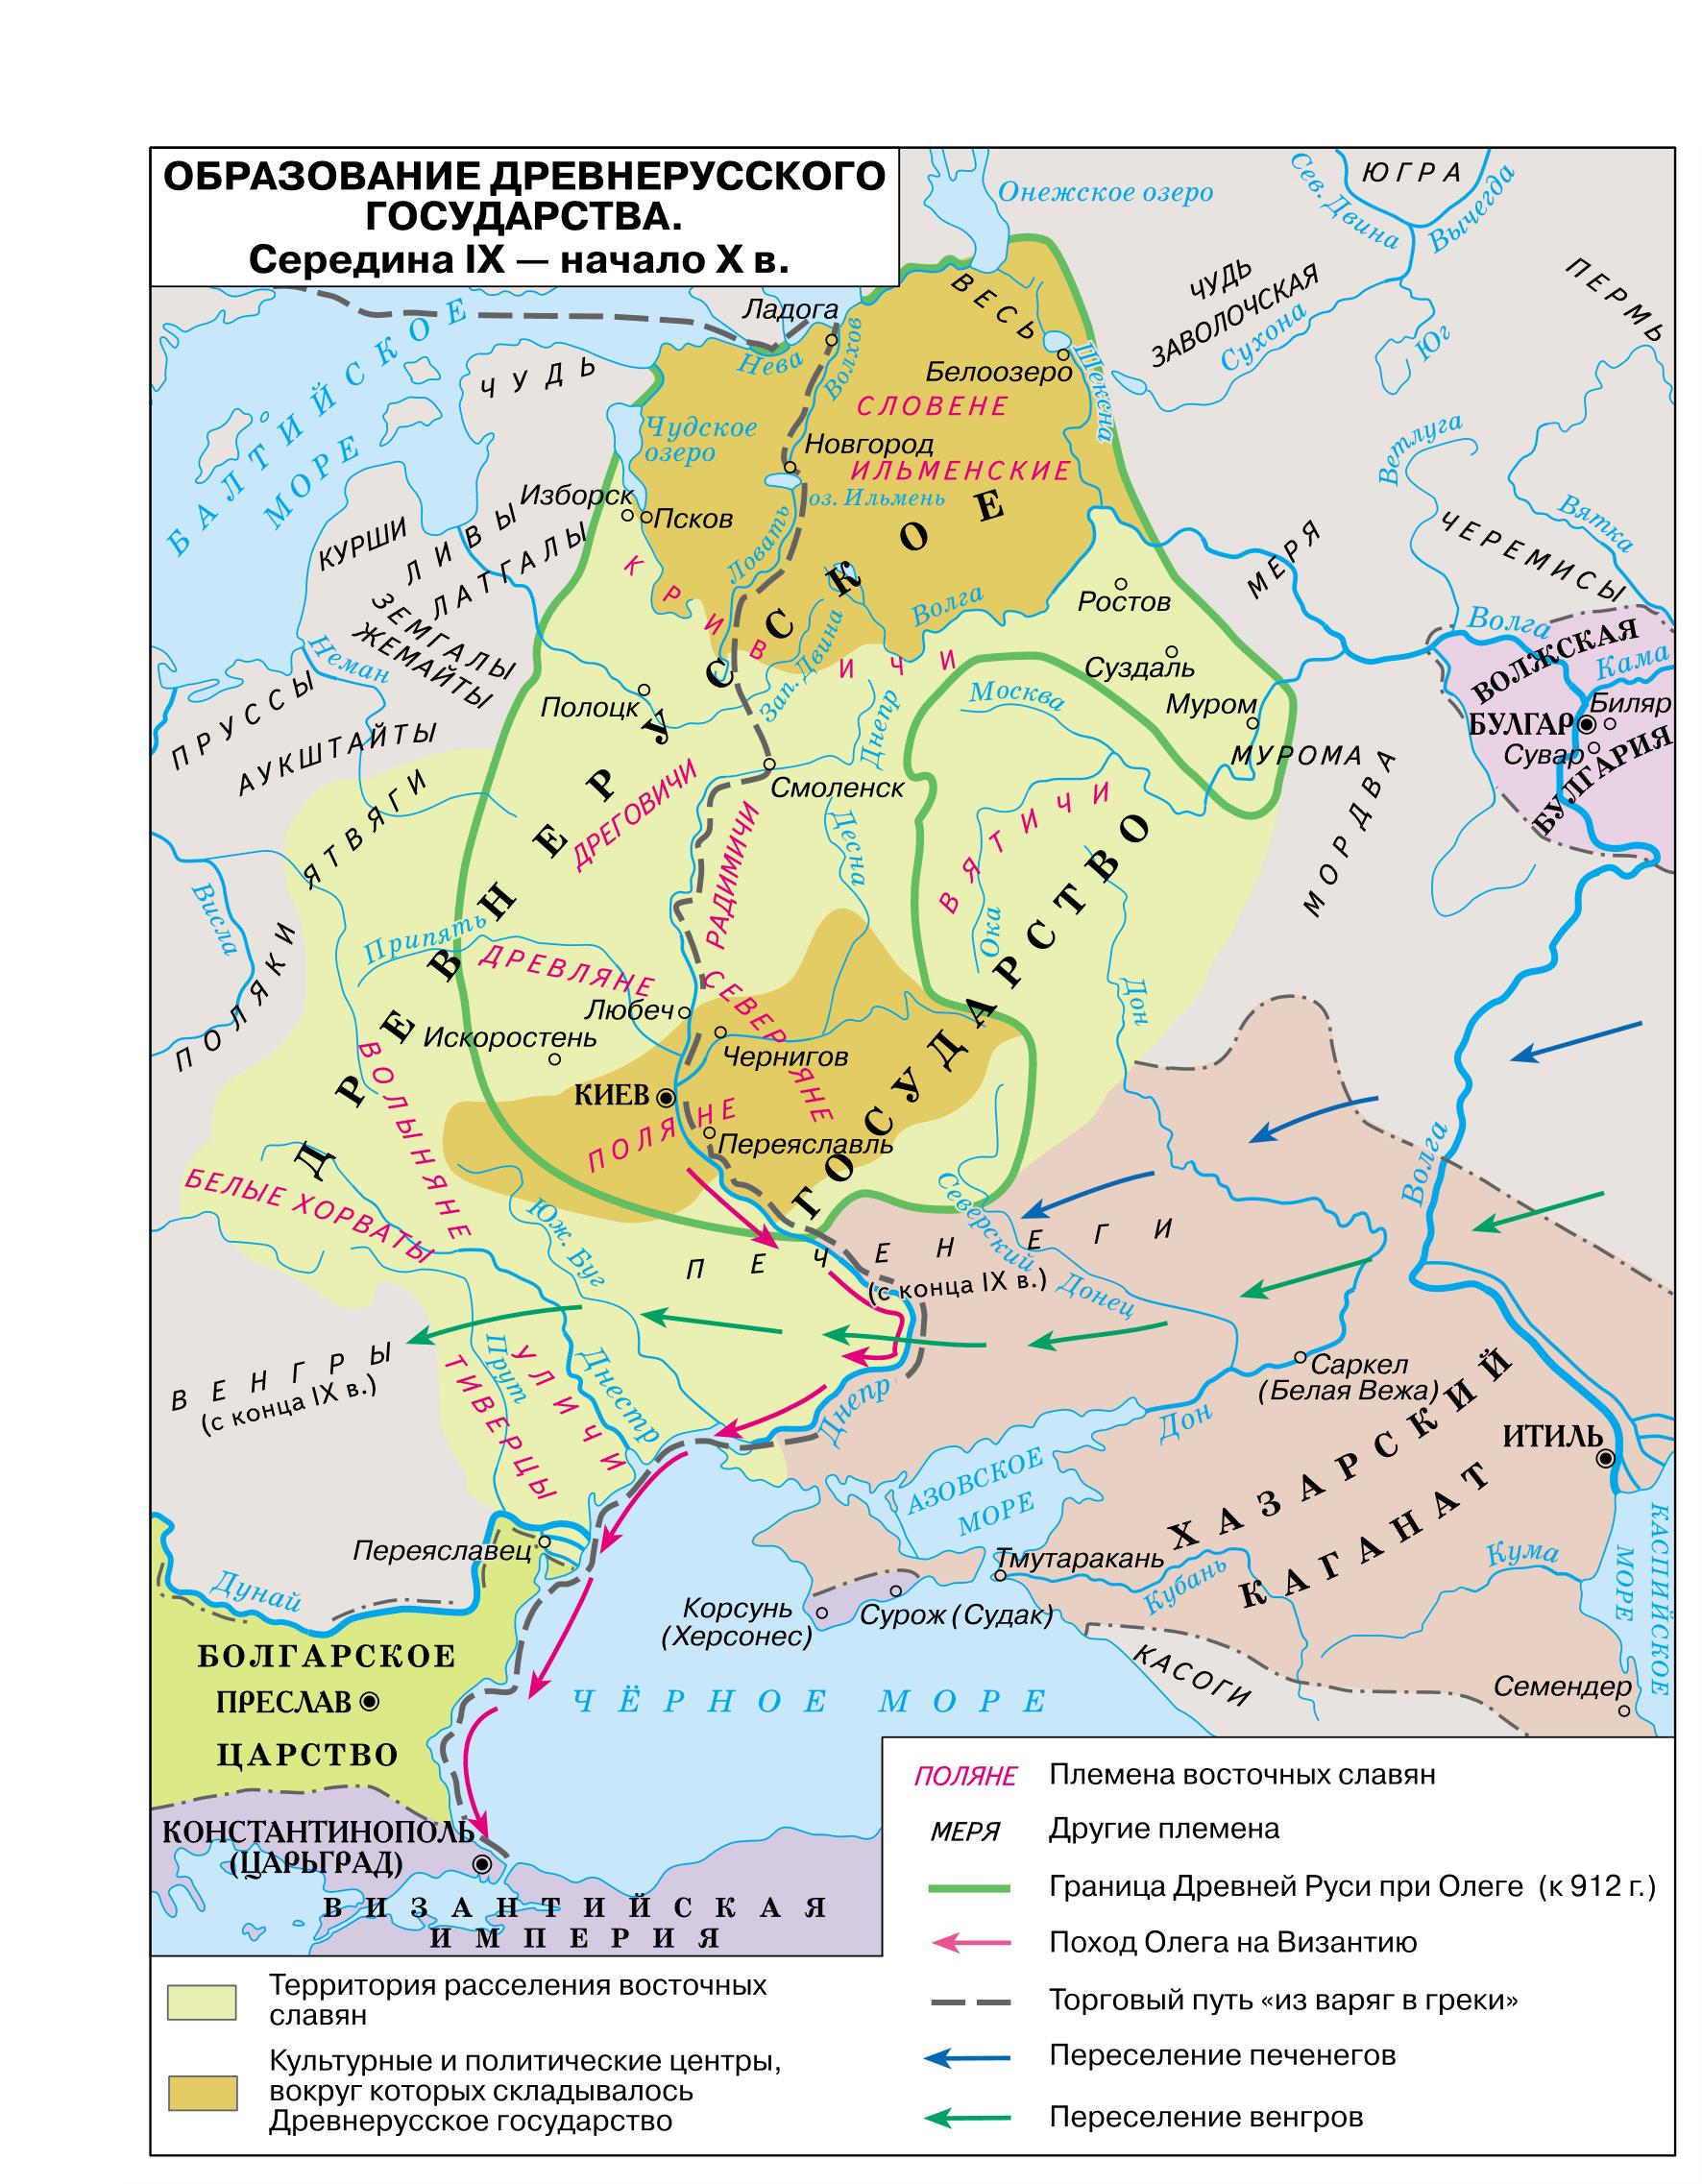 Территория древнерусского государства в 9-10 веке